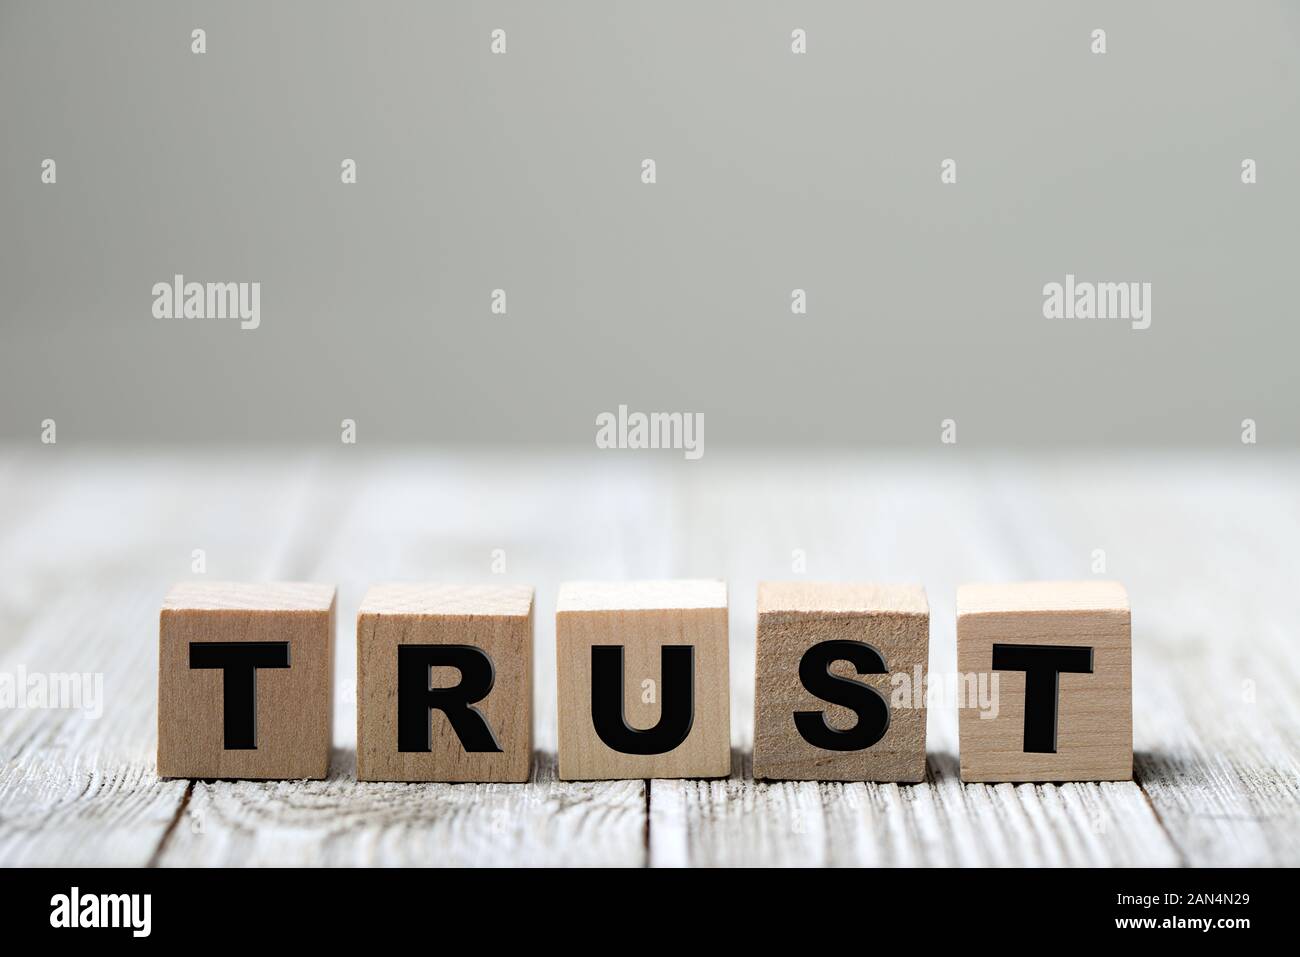 Trust mot écrit sur une cale en bois Banque D'Images